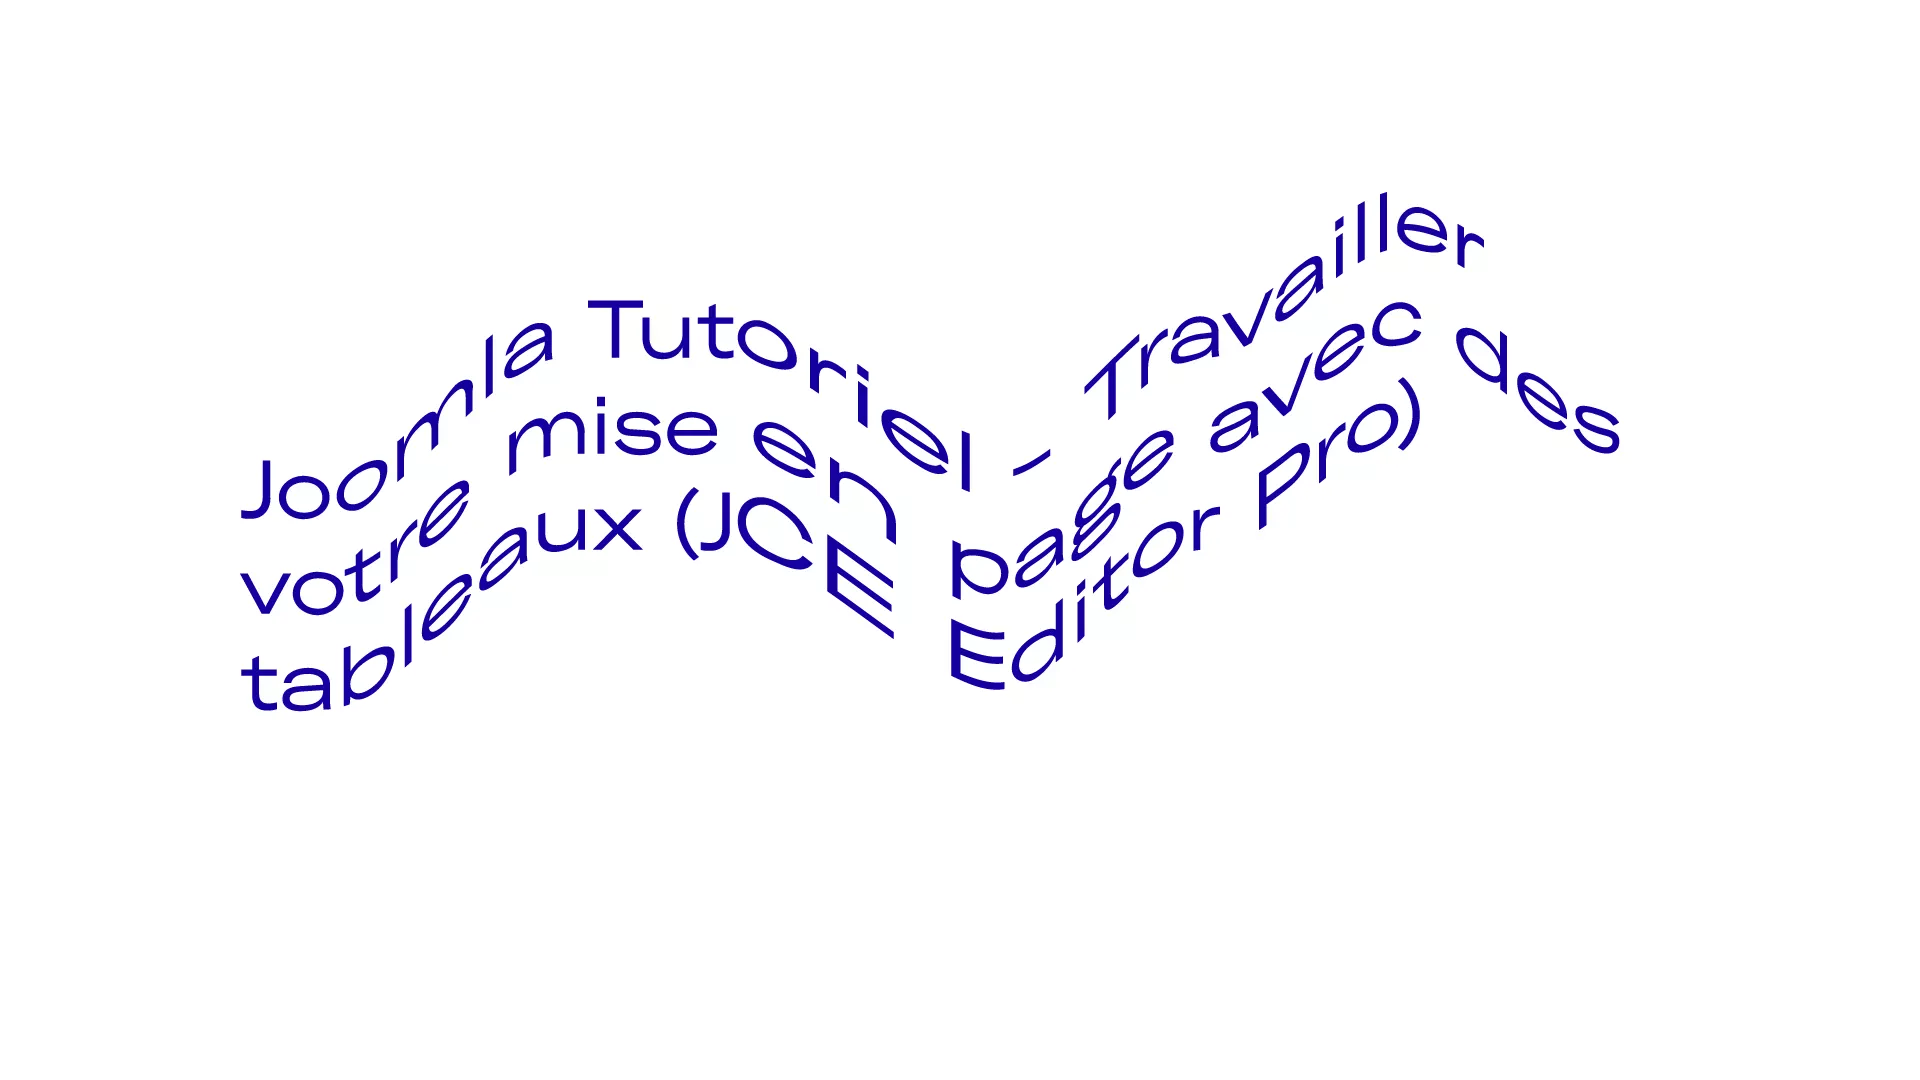 Joomla Tutoriel - Travailler votre mise en page avec des tableaux (JCE Editor Pro)